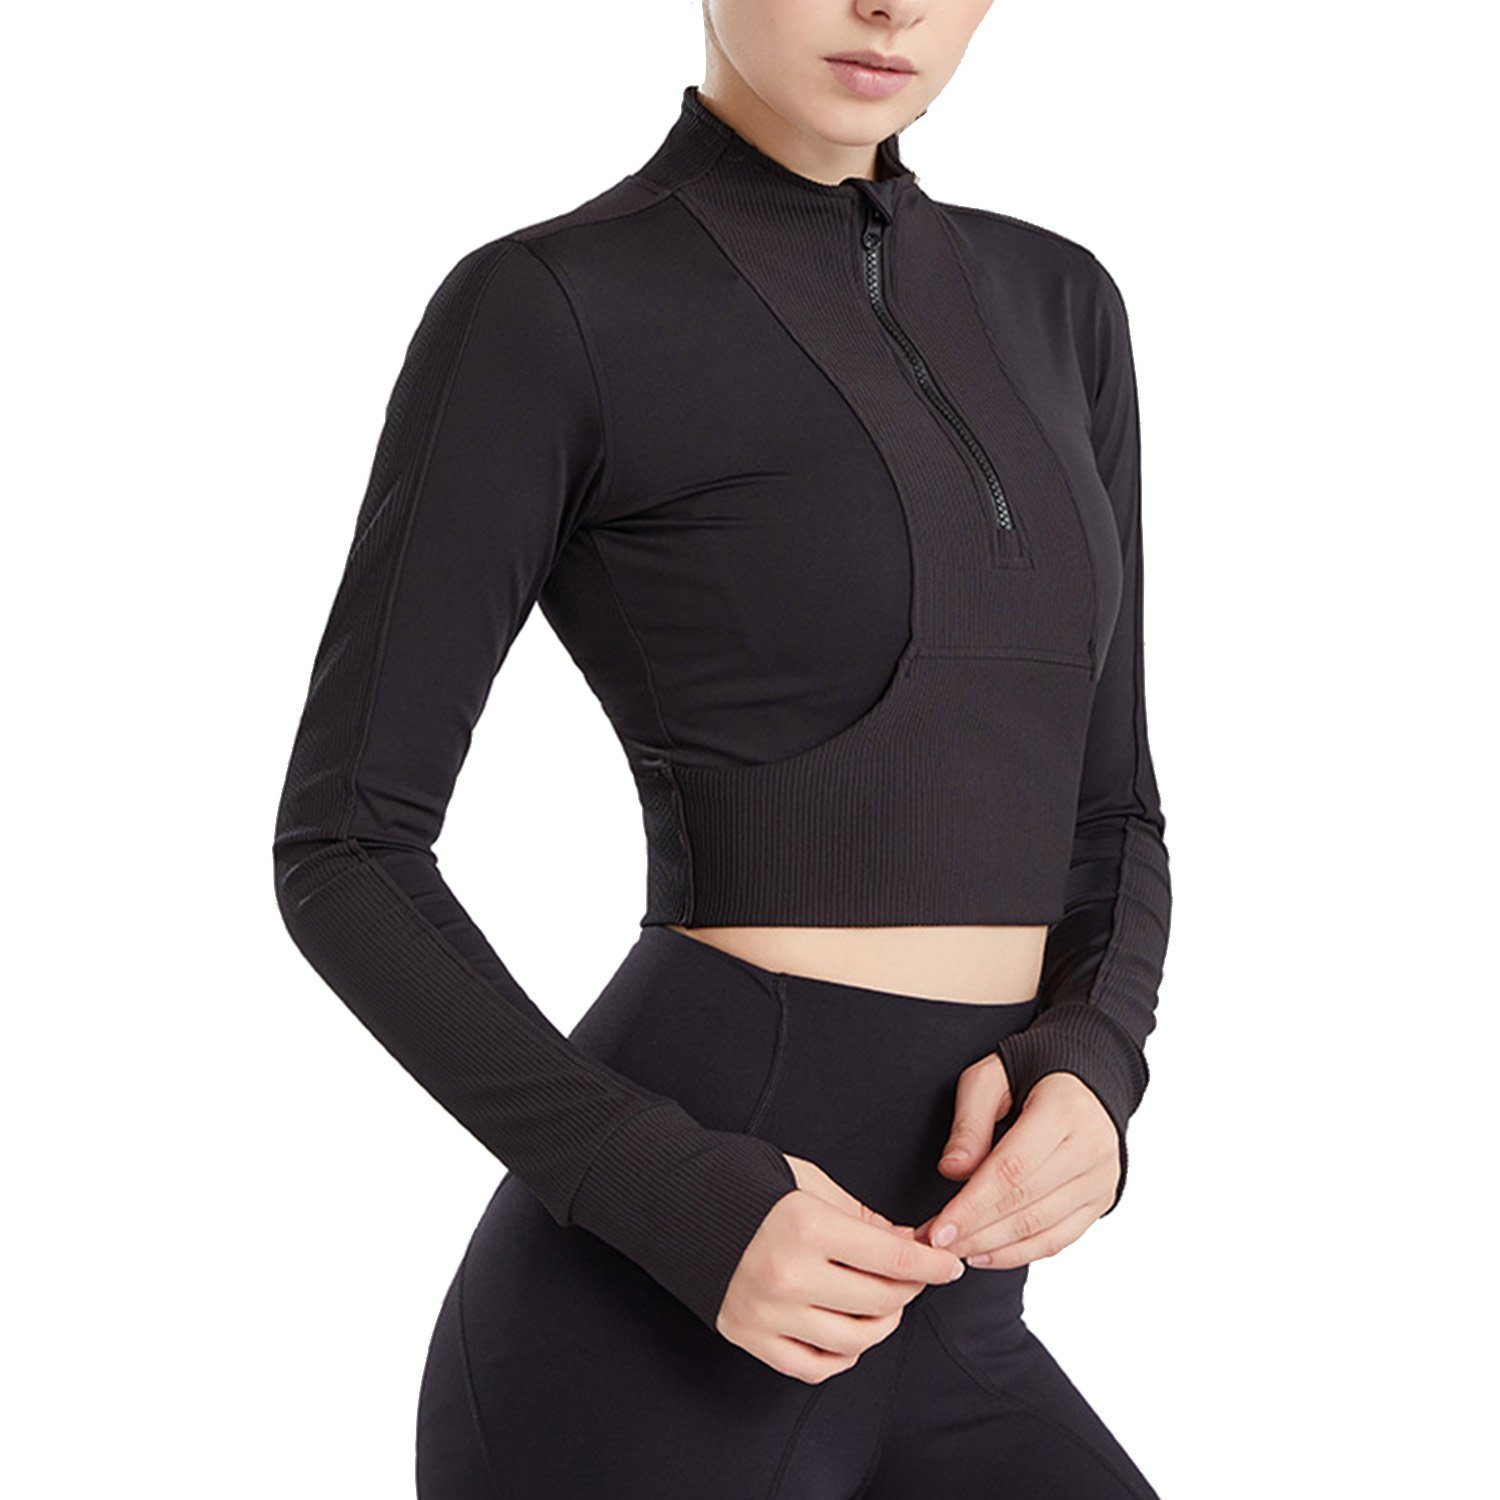 MAGICSHE Funktionsshirt T-Shirt Brust Fitness Sweatshirt Schwarz Top Reißverschluss Leicht Halber Damen Design